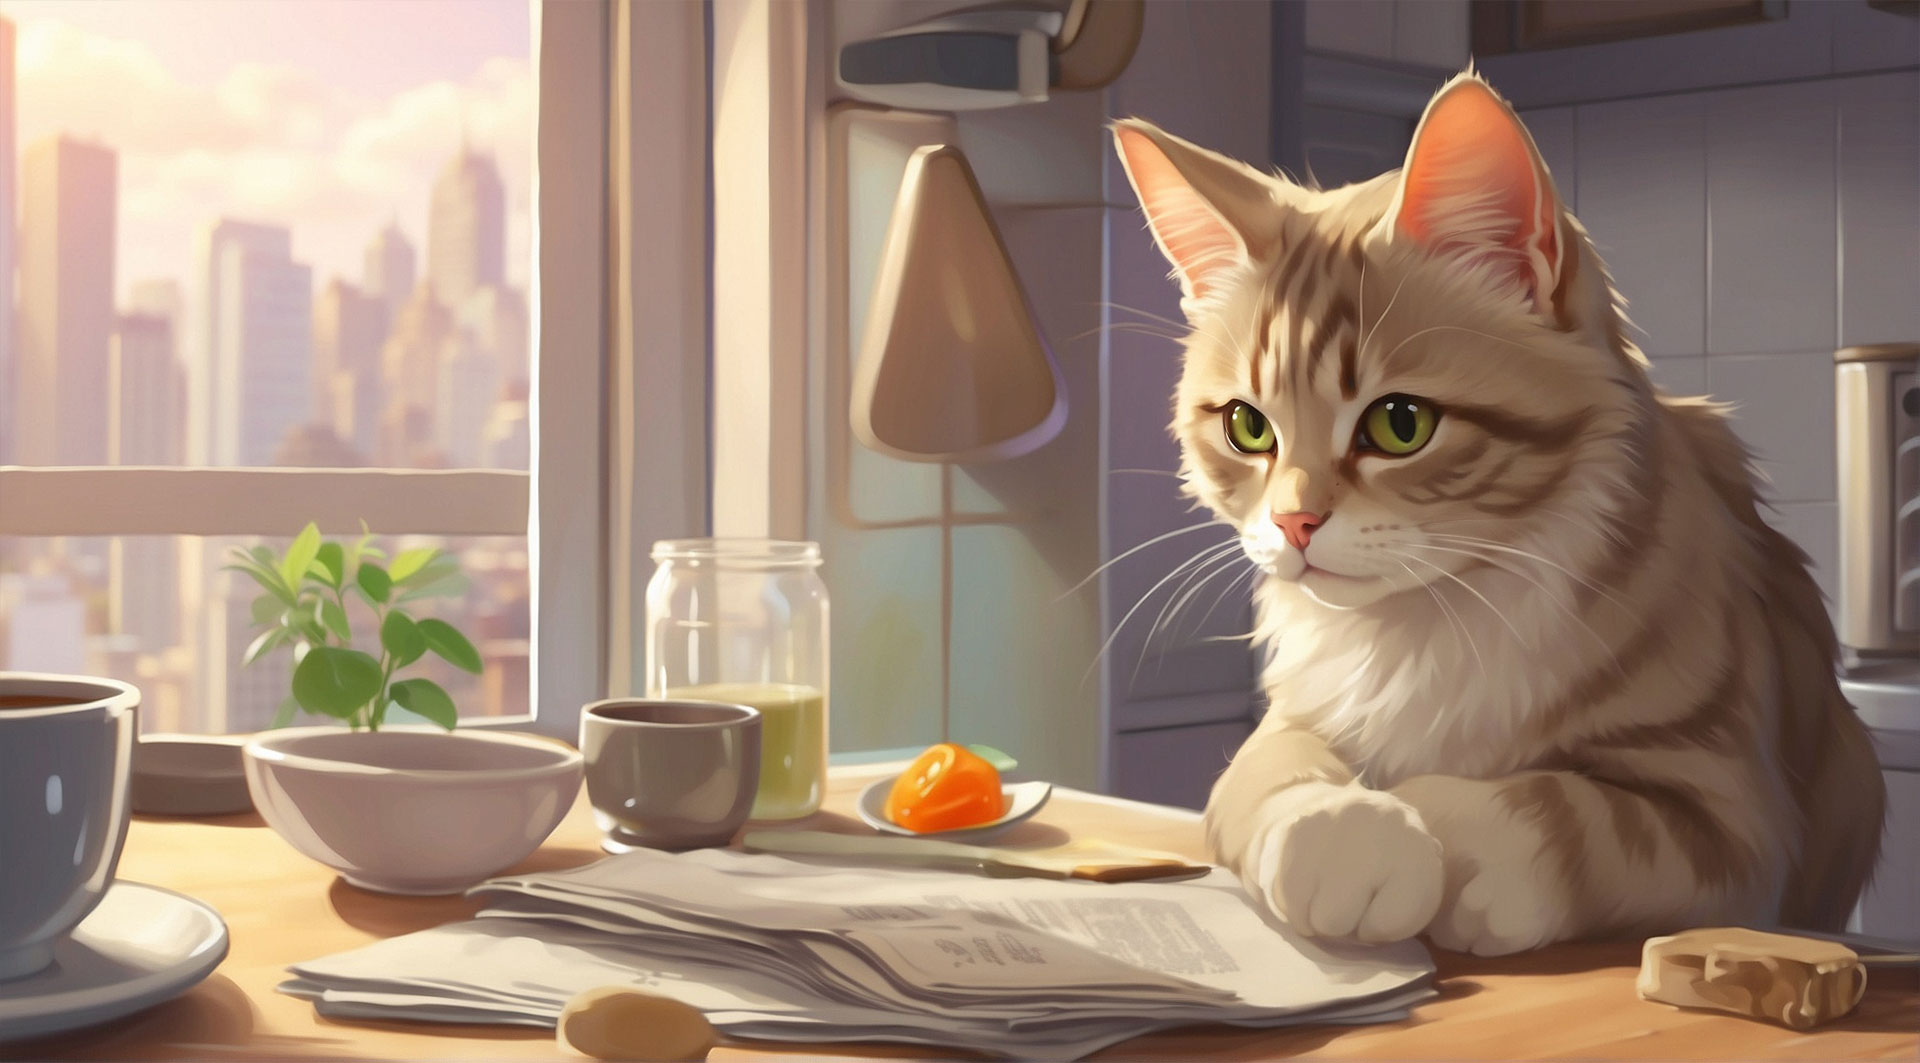 キッチンで書類を読む猫の画像